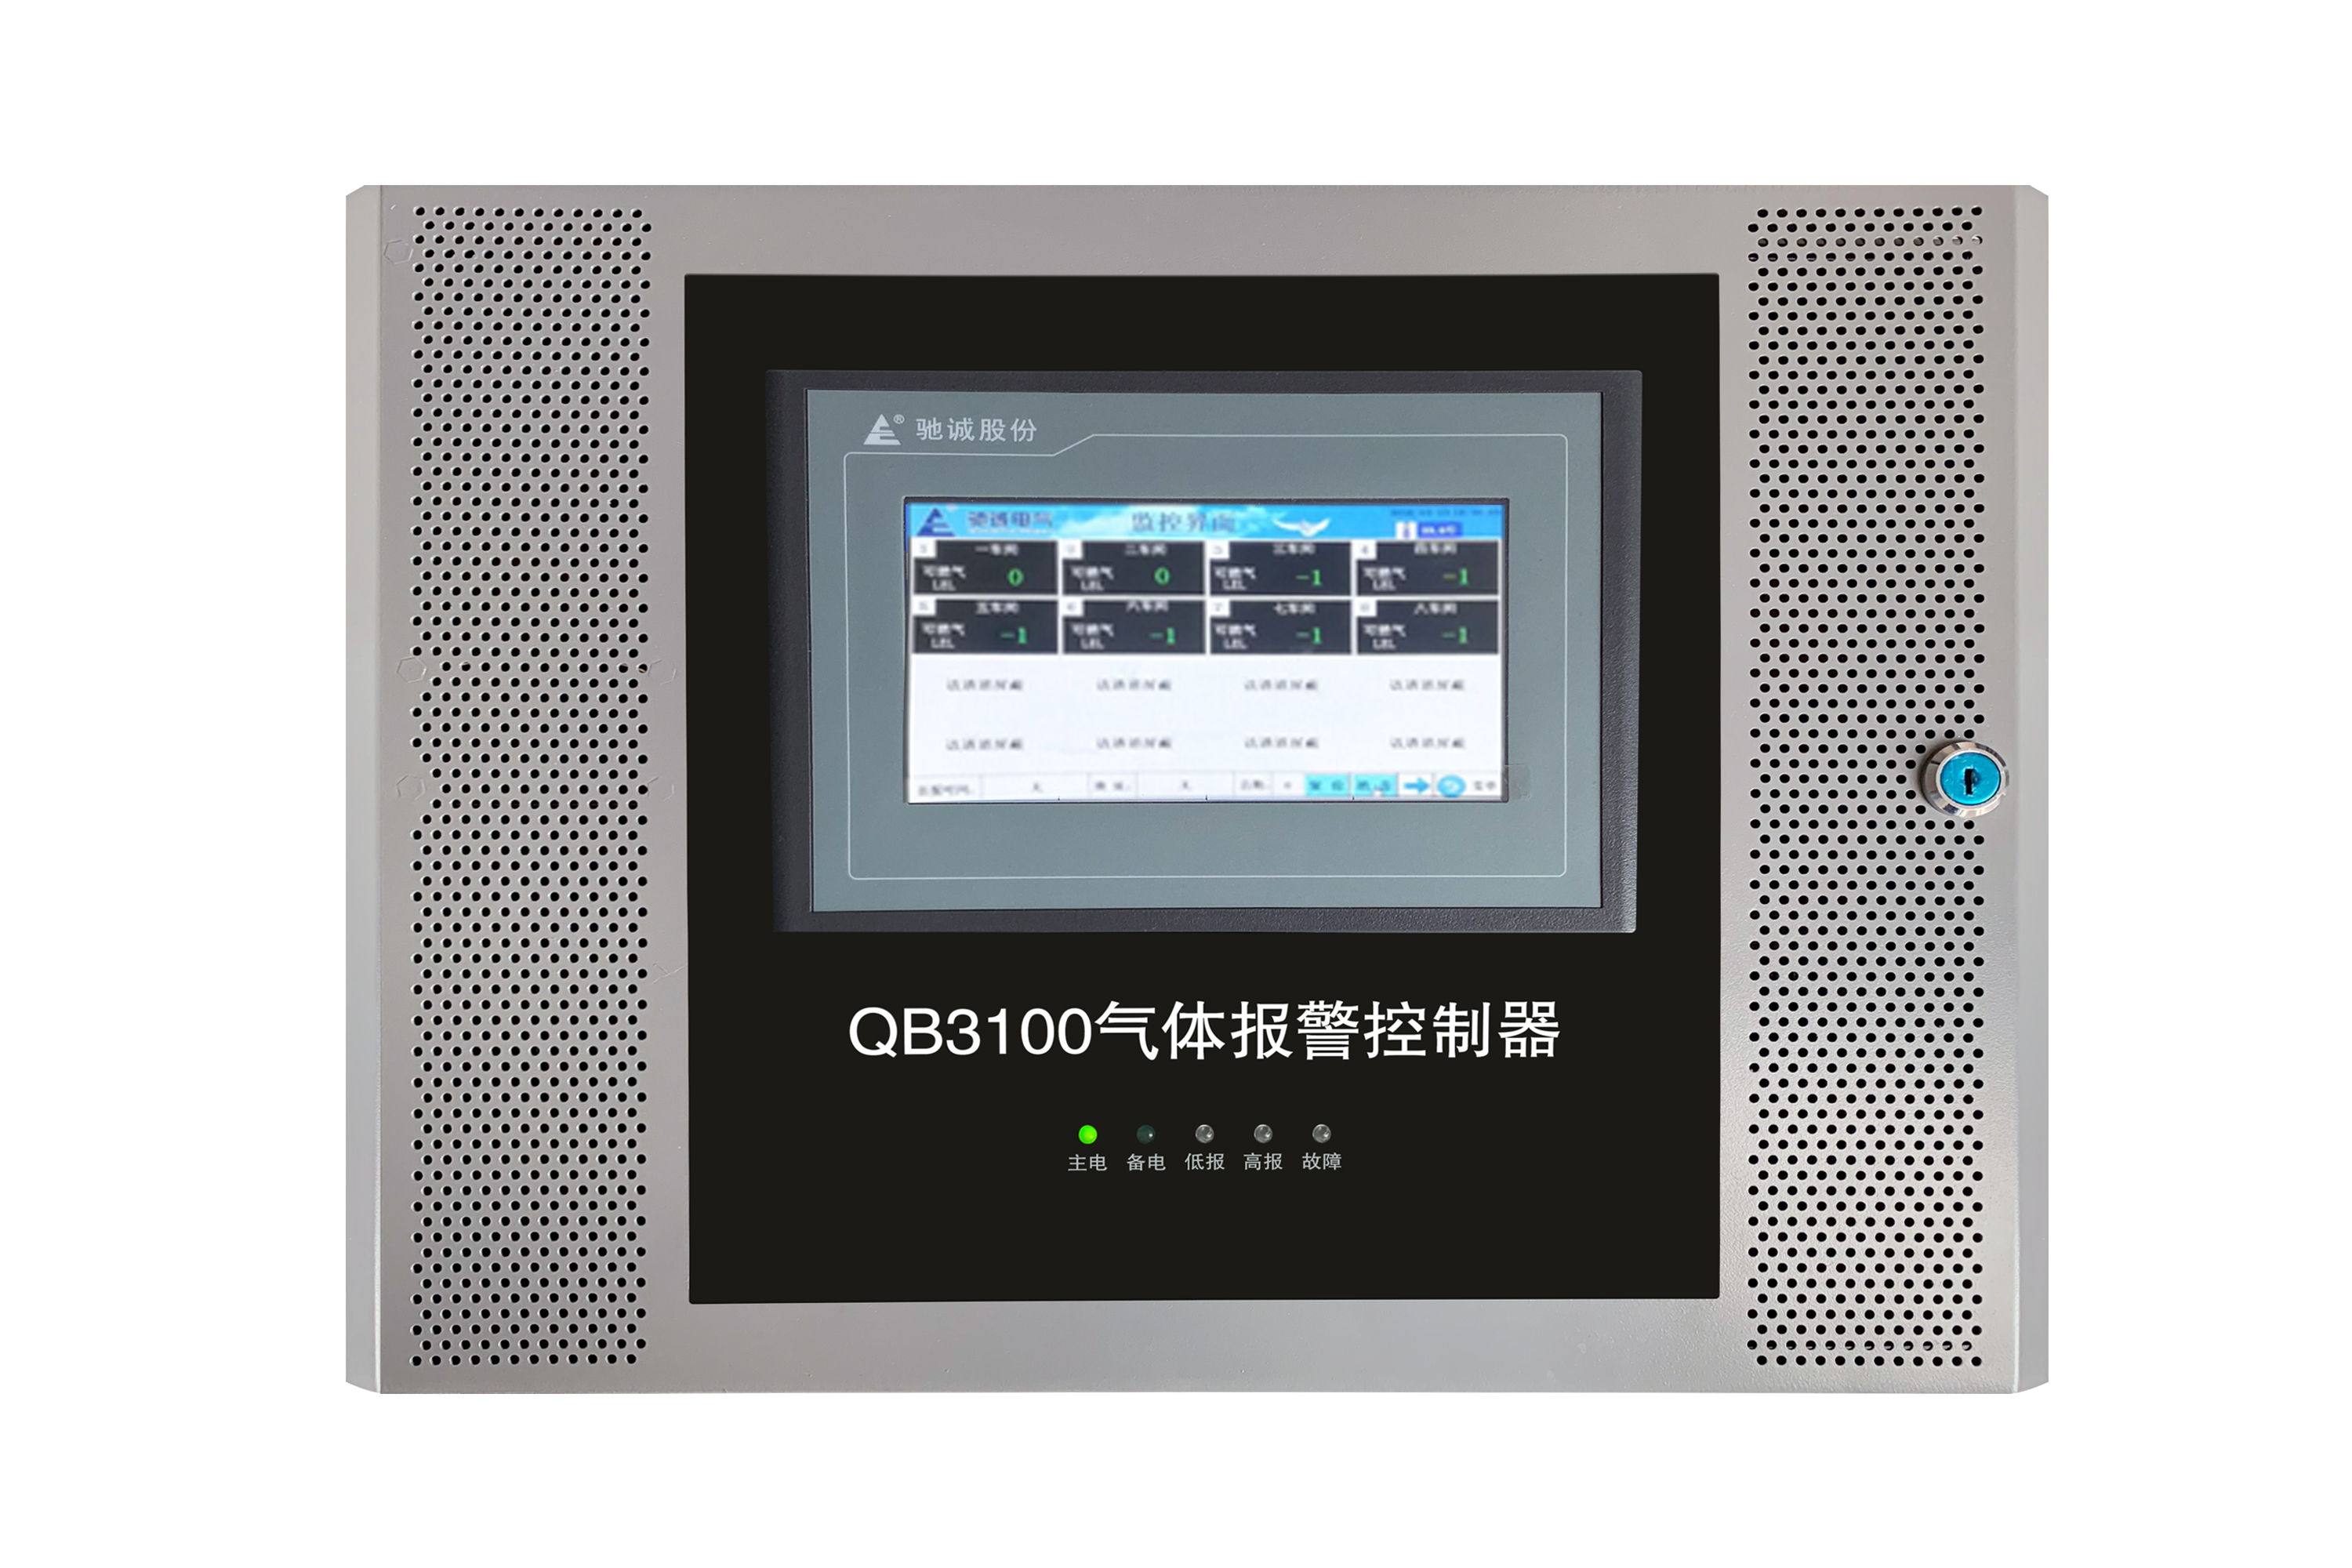 QB3100型触摸气体报警控制器